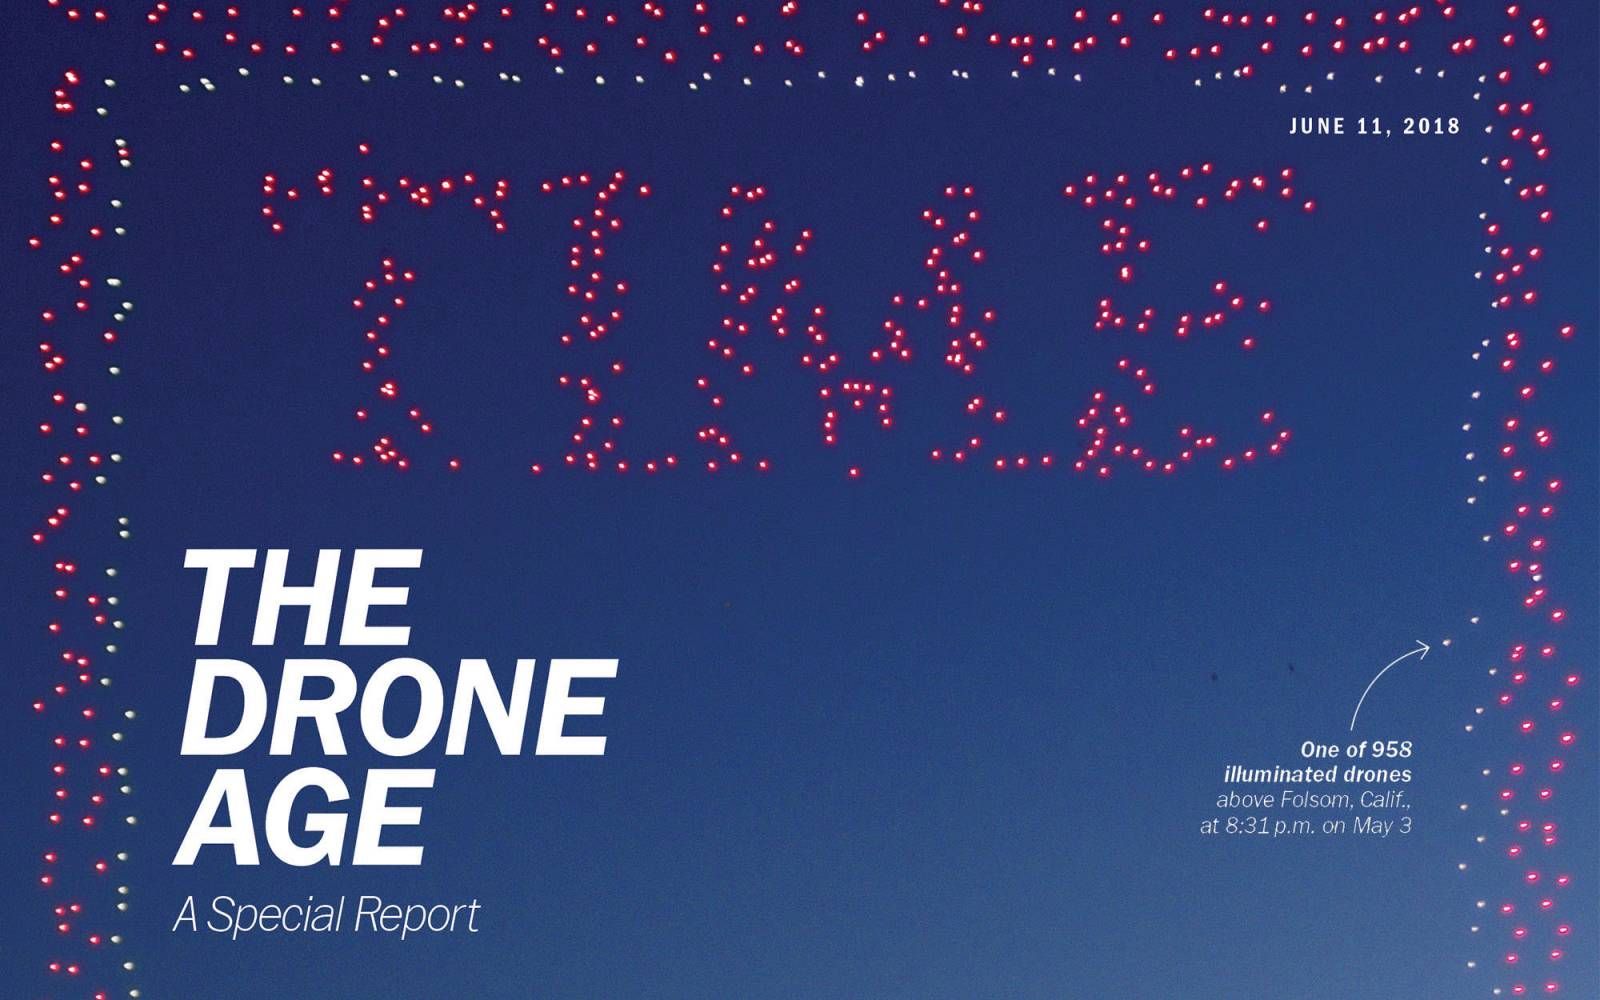 Журнал Time створив неймовірну обкладинку із дронів: запаморочливе відео